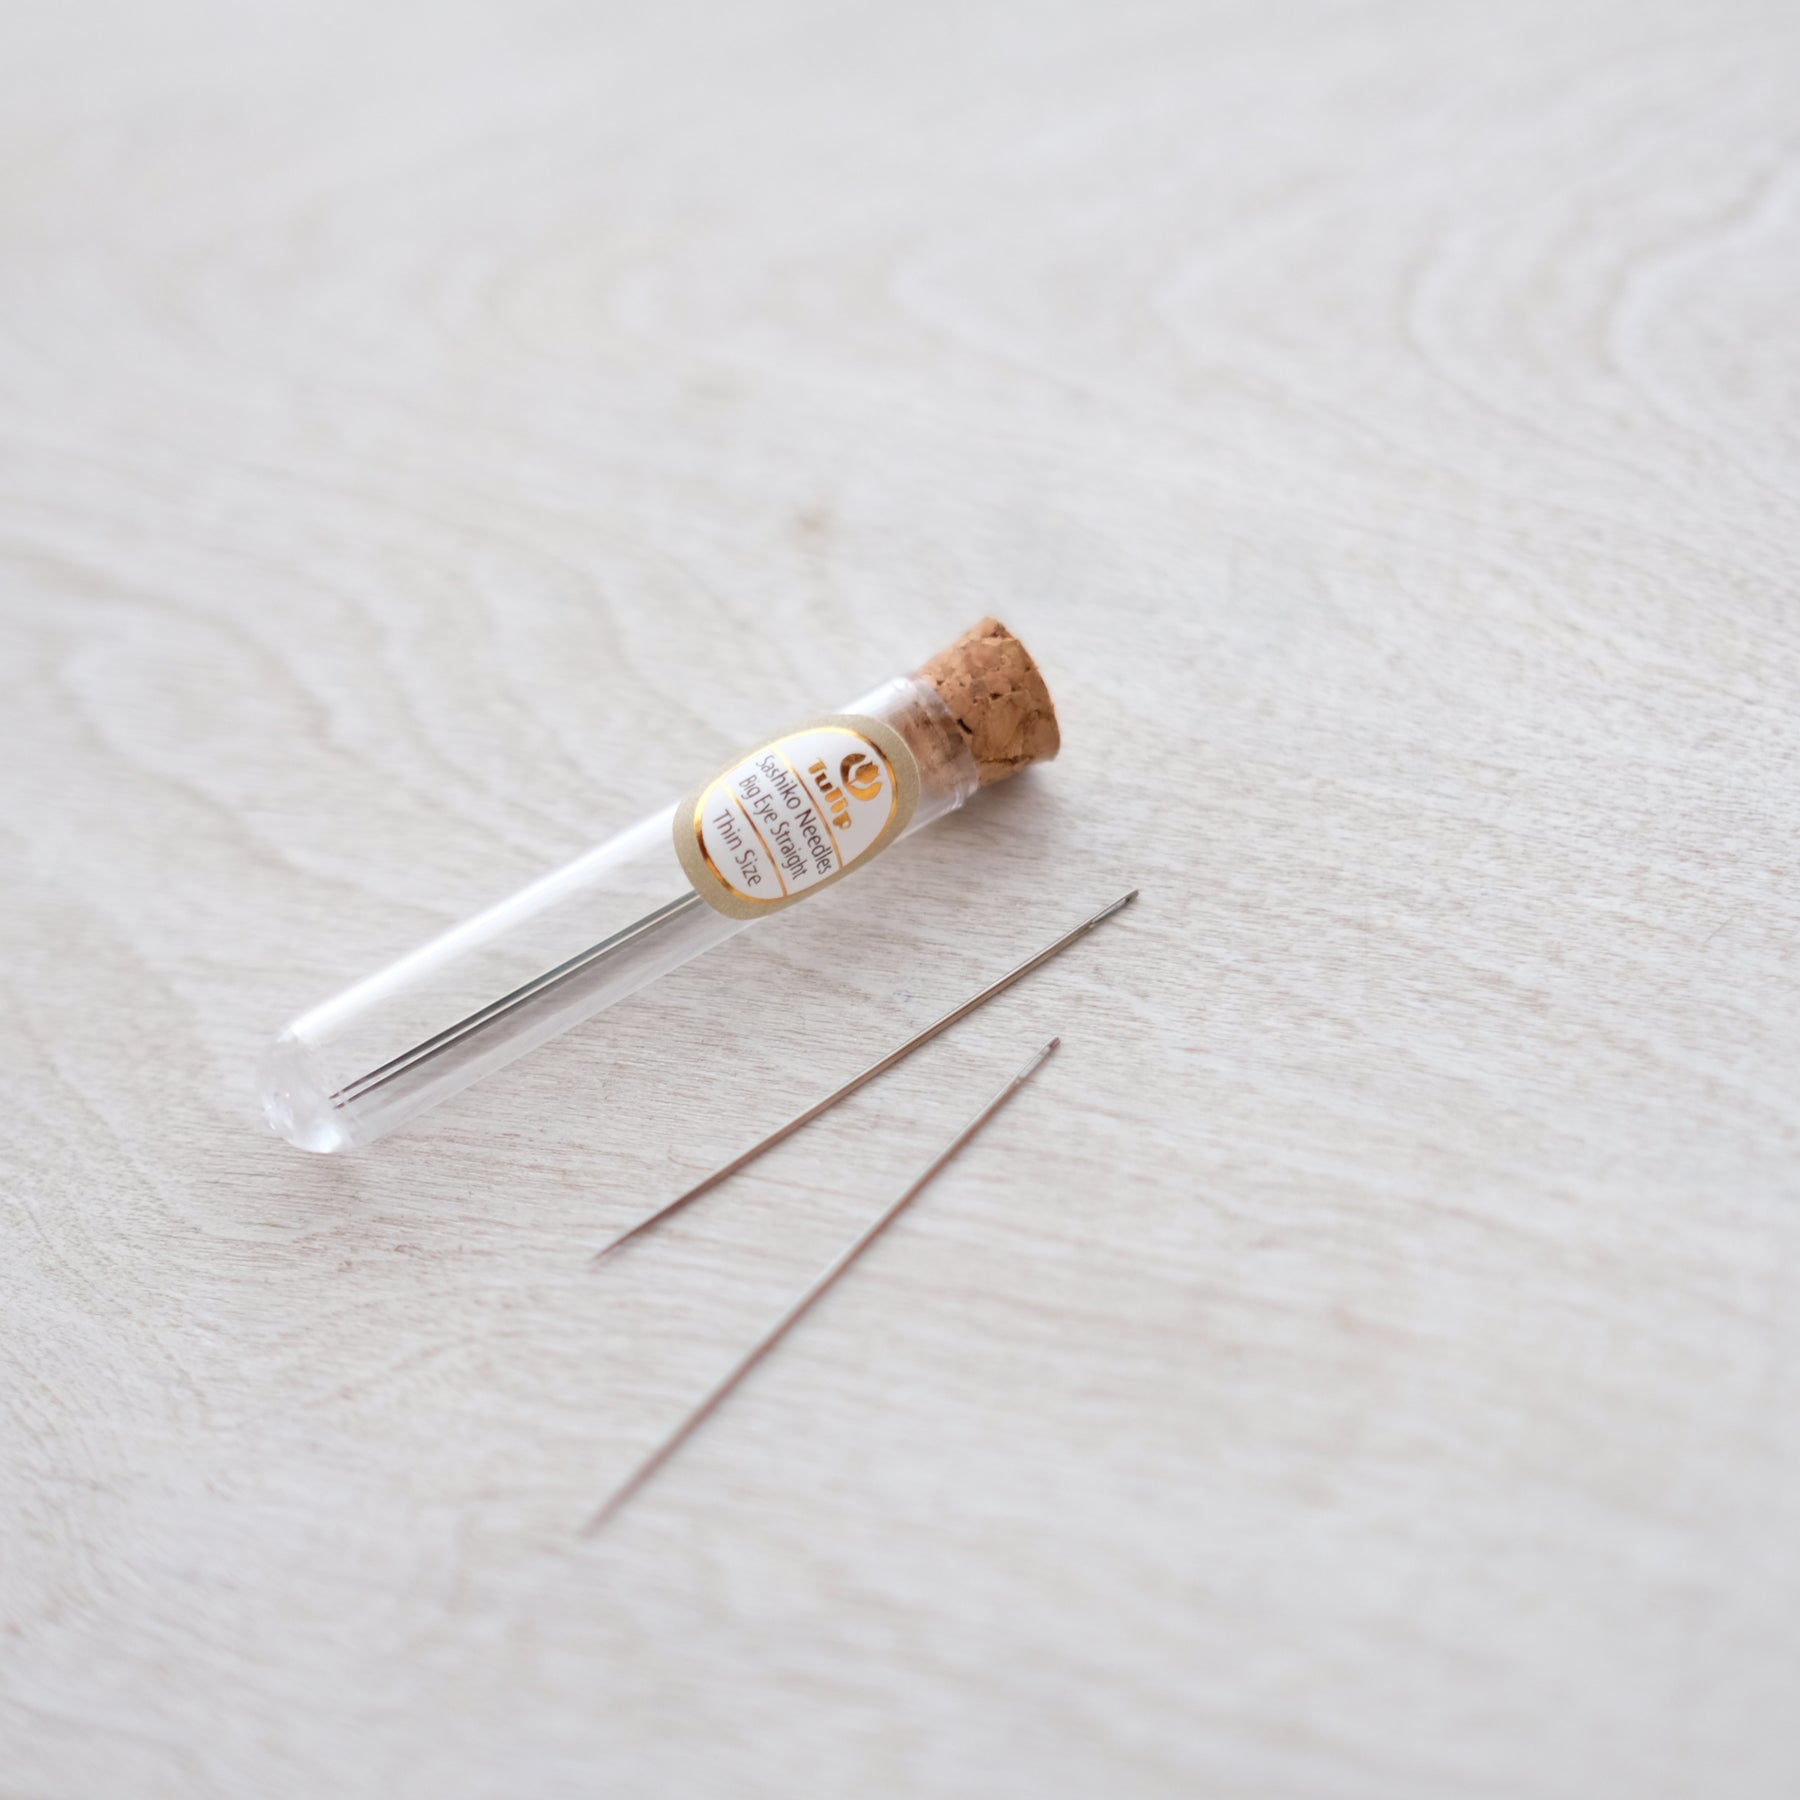 Sashiko Needles | Tulip Hiroshima Sashiko Needles - Assorted LONG Needles  with Large Eye for Easy Threading